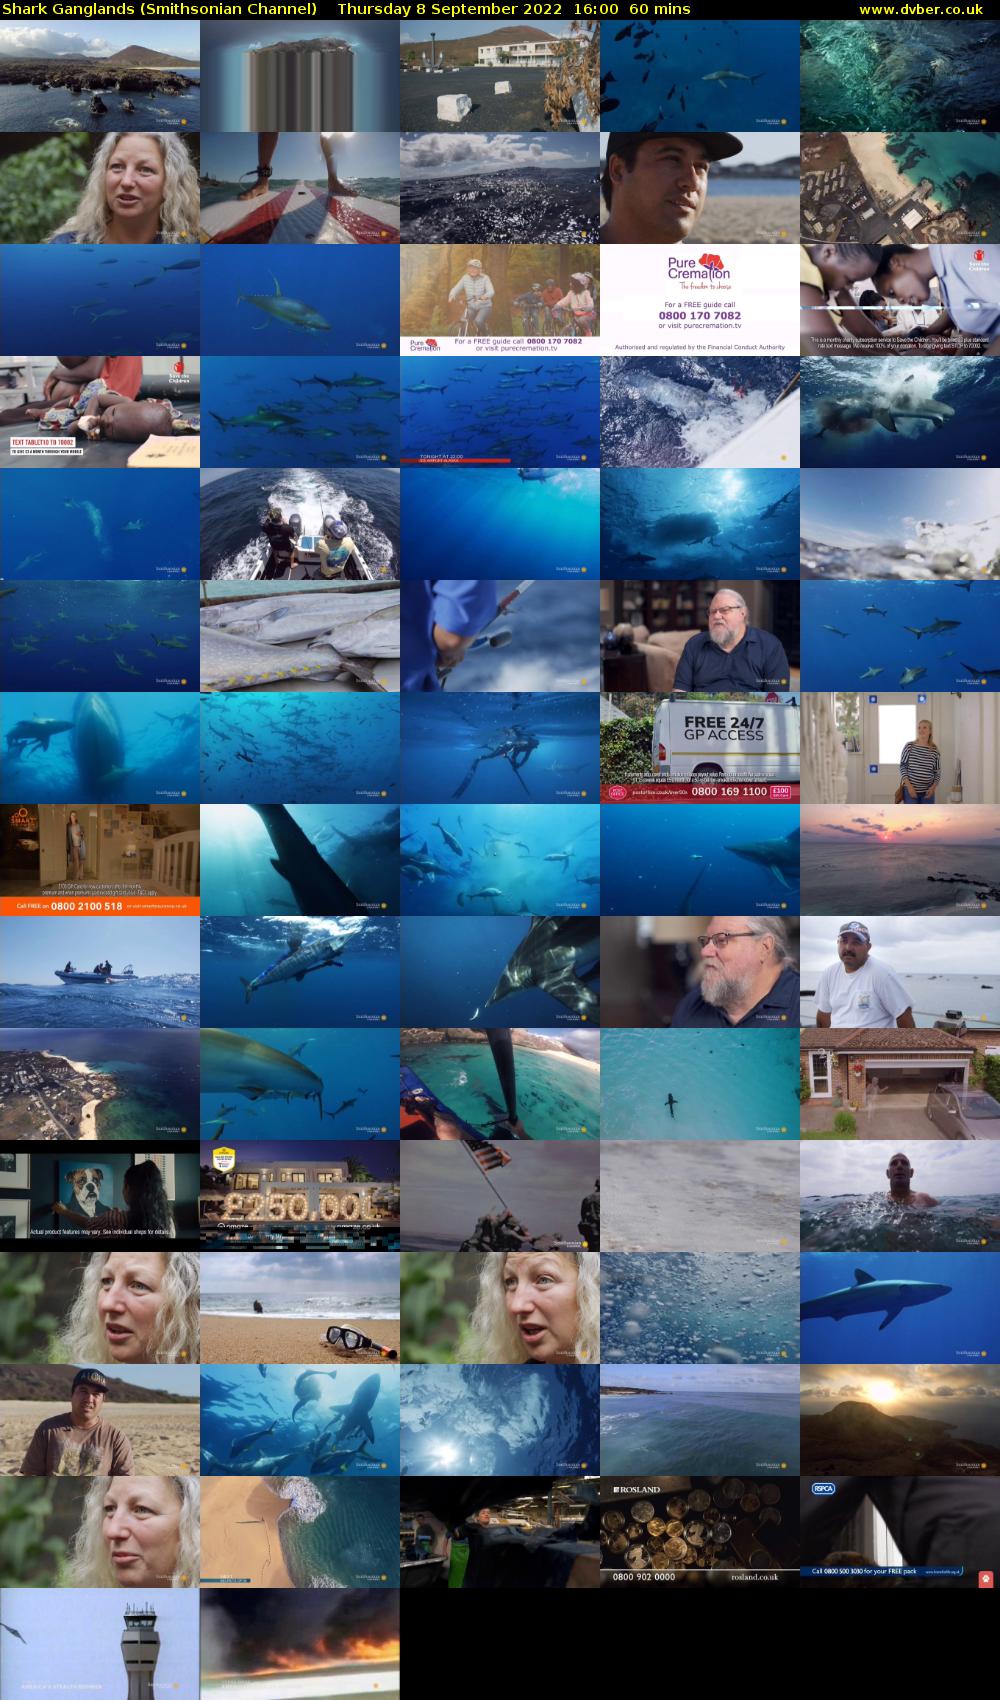 Shark Ganglands (Smithsonian Channel) Thursday 8 September 2022 16:00 - 17:00